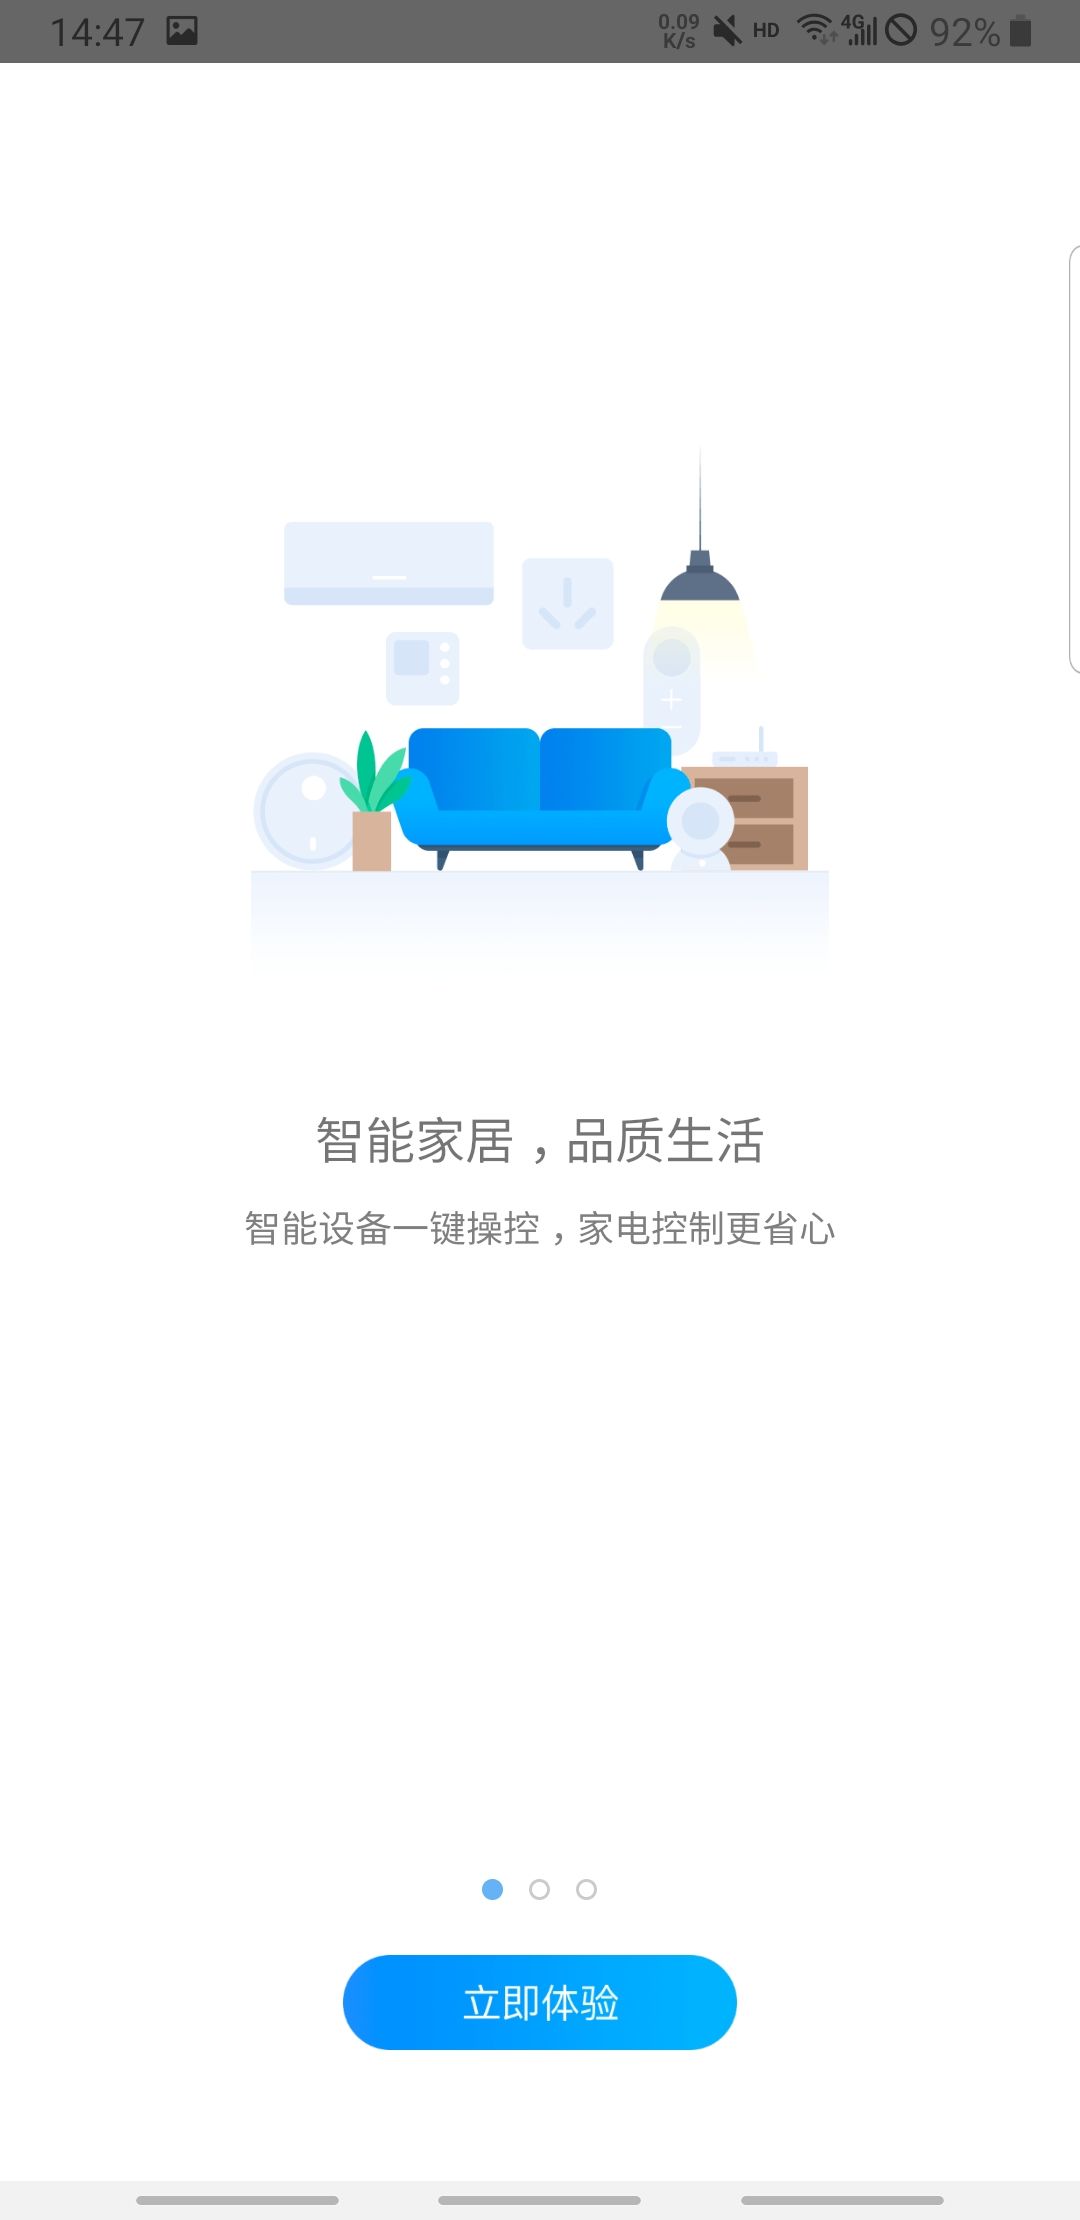 中国电信小翼管家客户端5.0.0最新安卓版截图1